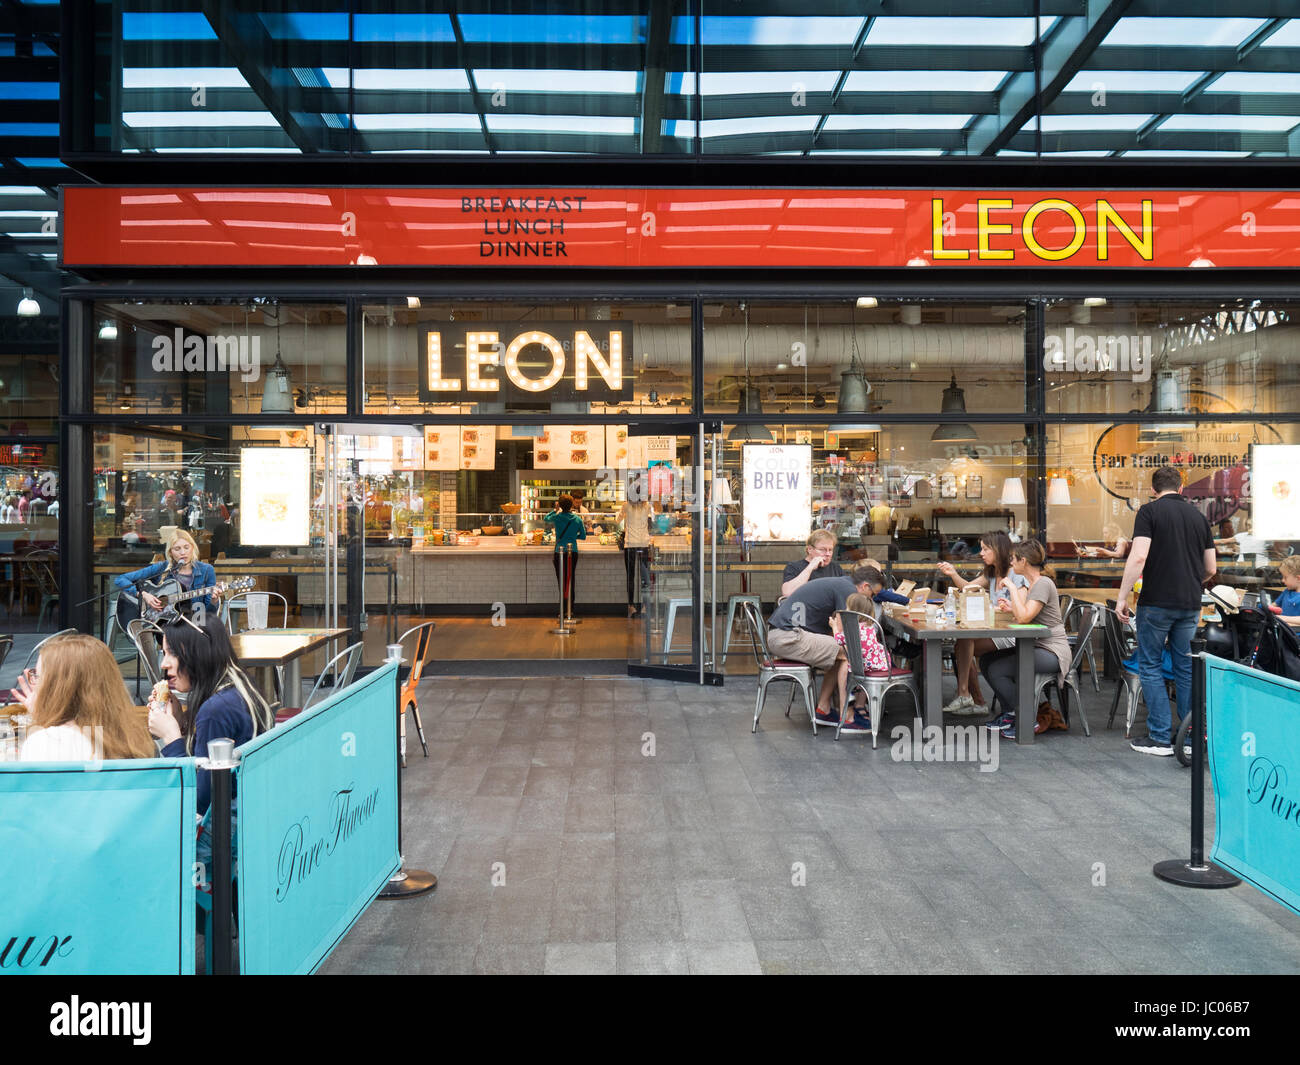 L'Leon manger sain sain & restaurant dans le marché de Spitalfields développement dans la ville de Londres. Banque D'Images